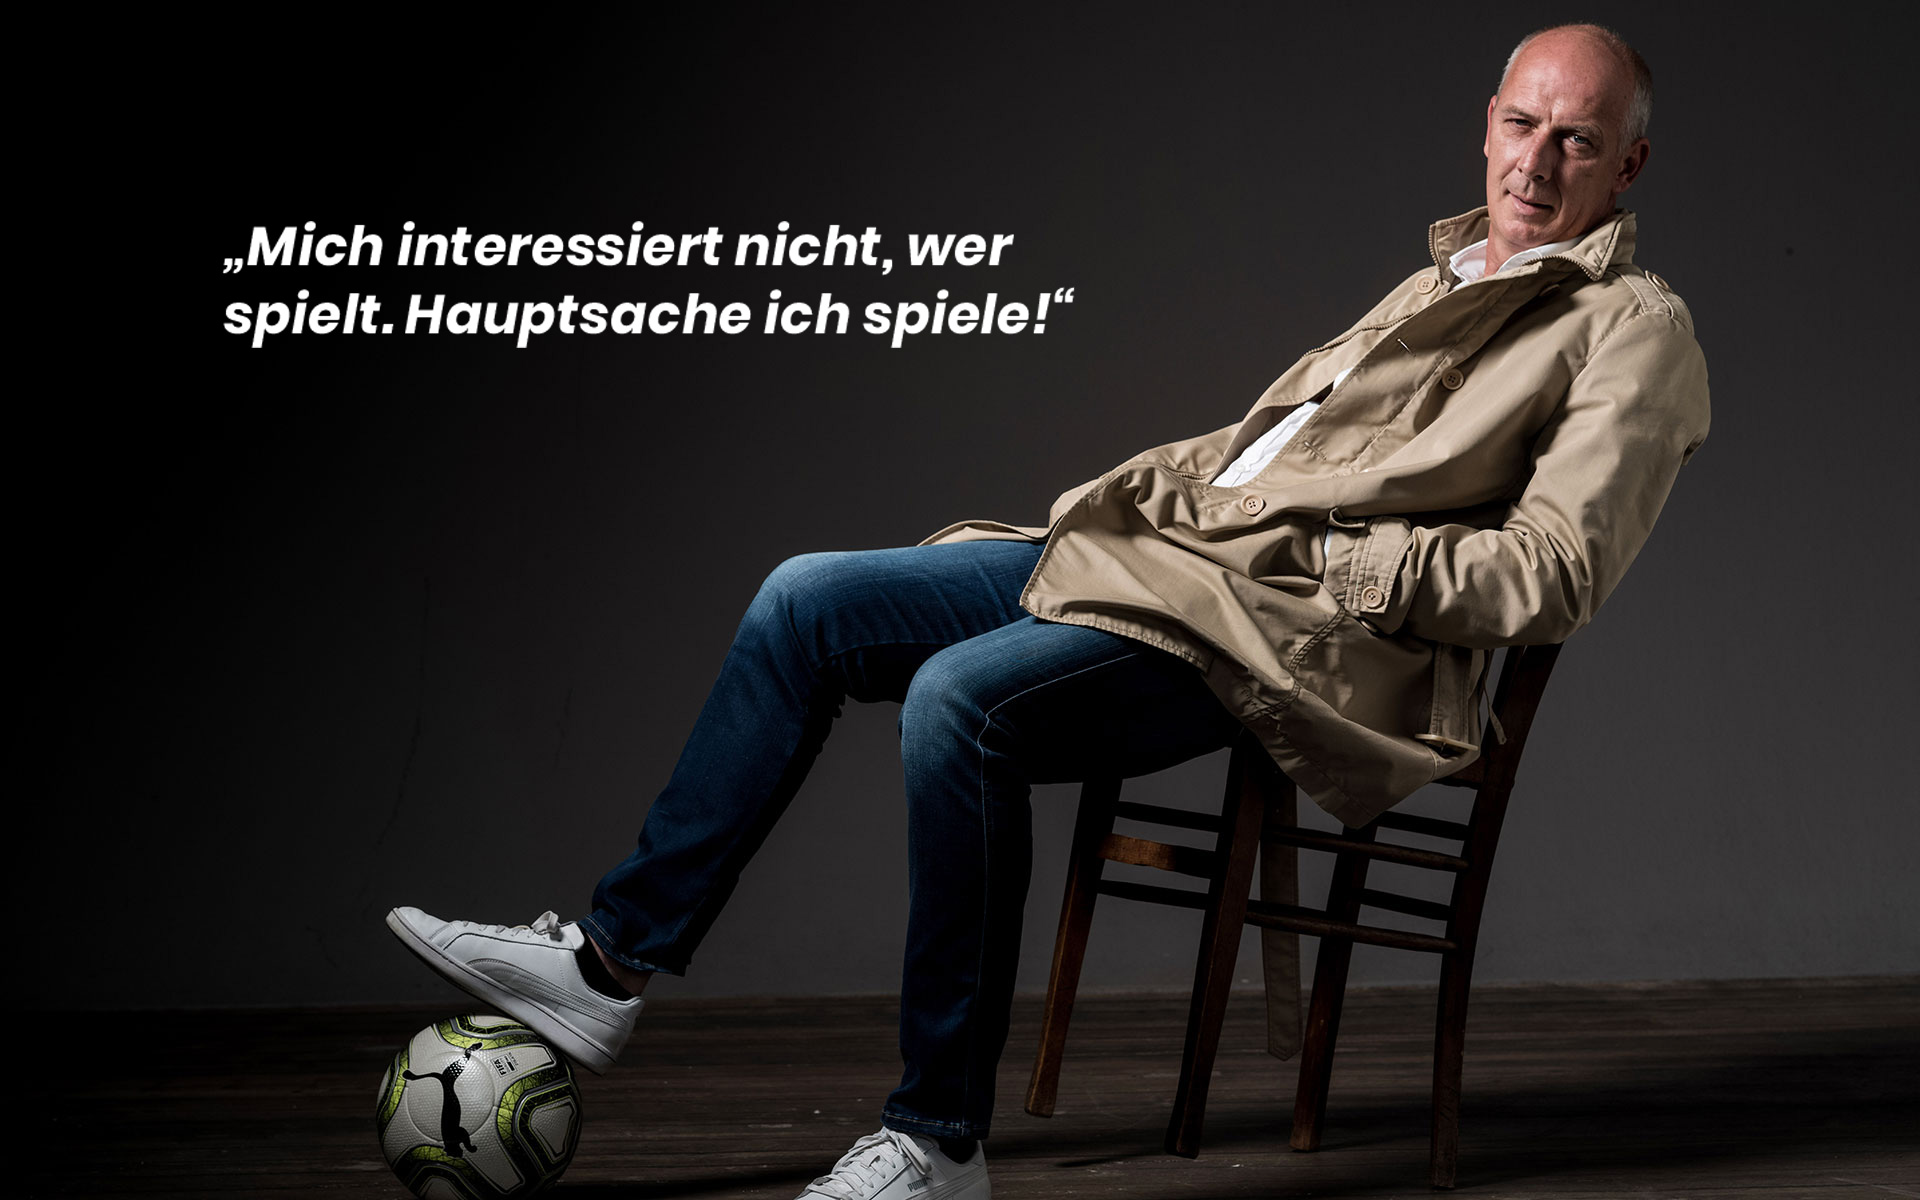 Mario Basler, Deutscher Fussballtrainer, Koeln, Studio, 18.07.2018, Pictures Taken By Stephan Pick